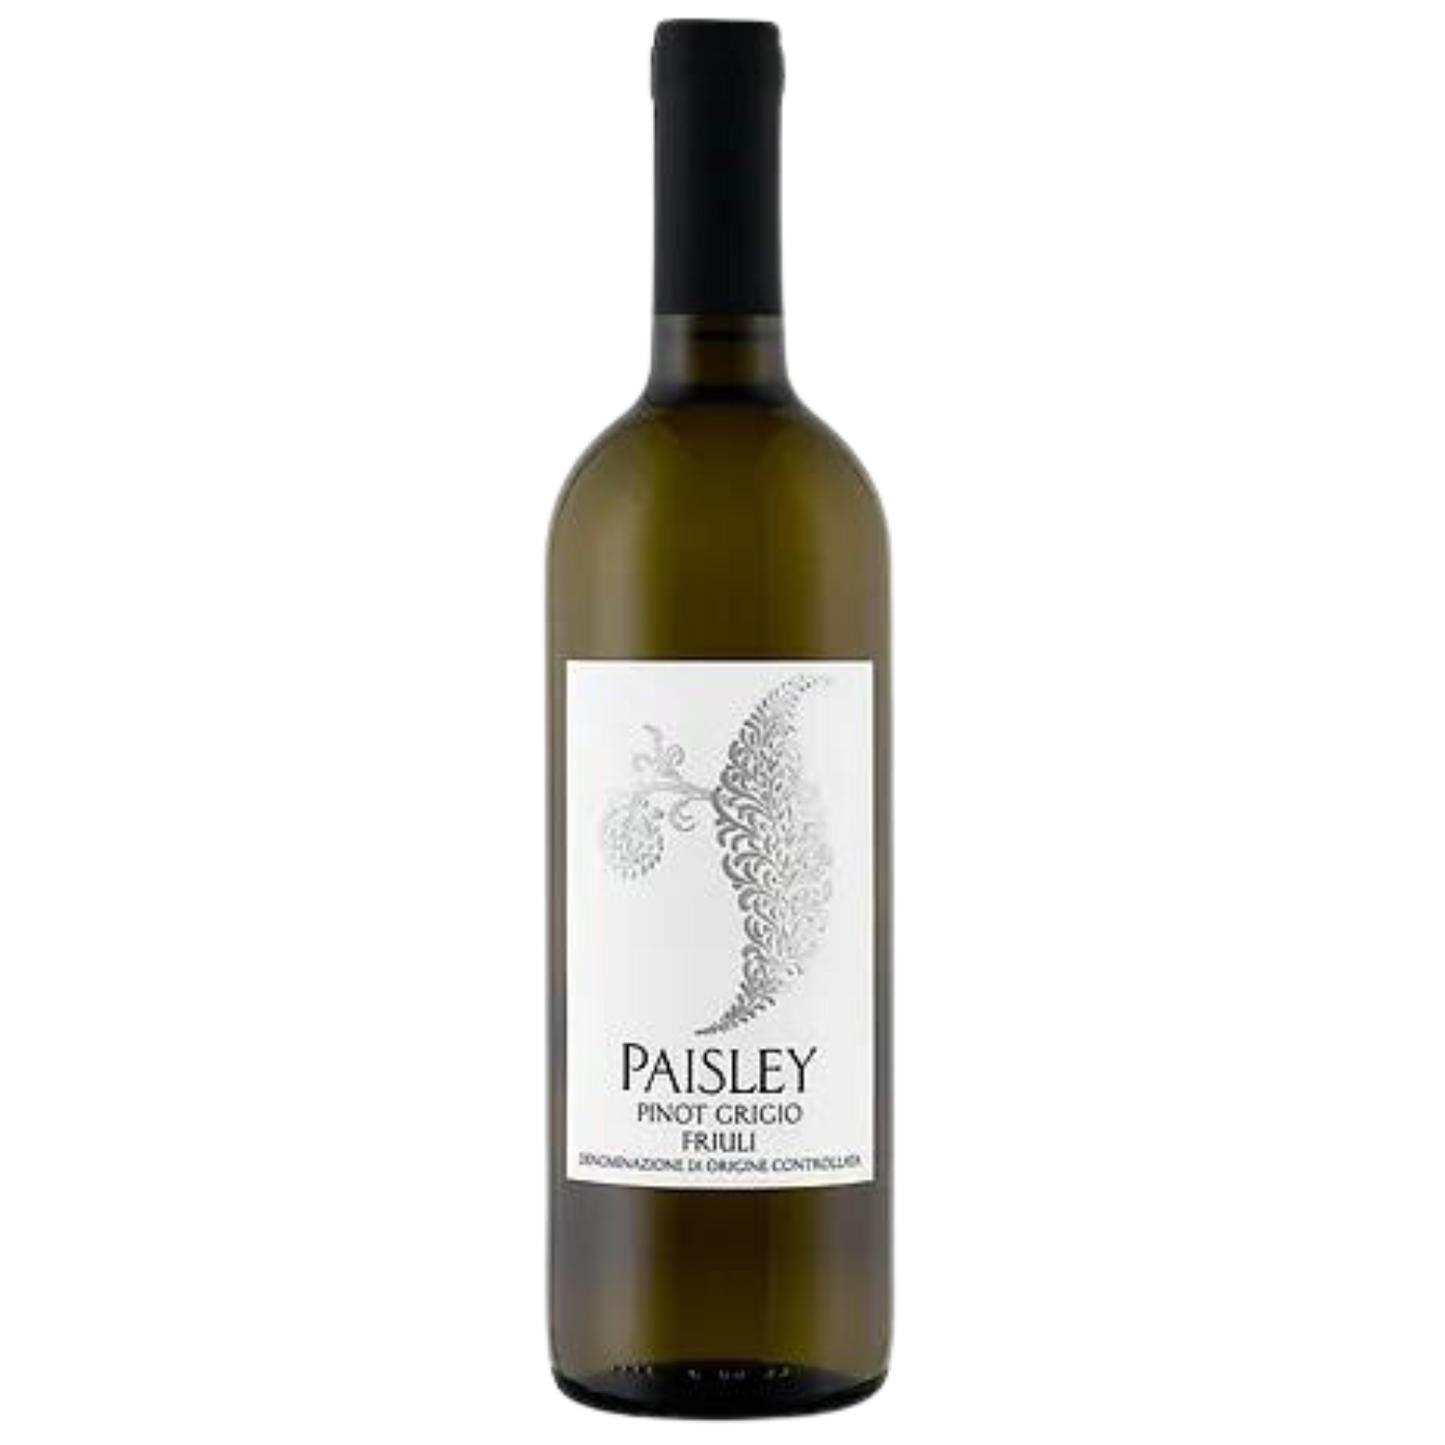 Paisley, 2020 Pinot Grigio (Friuli)